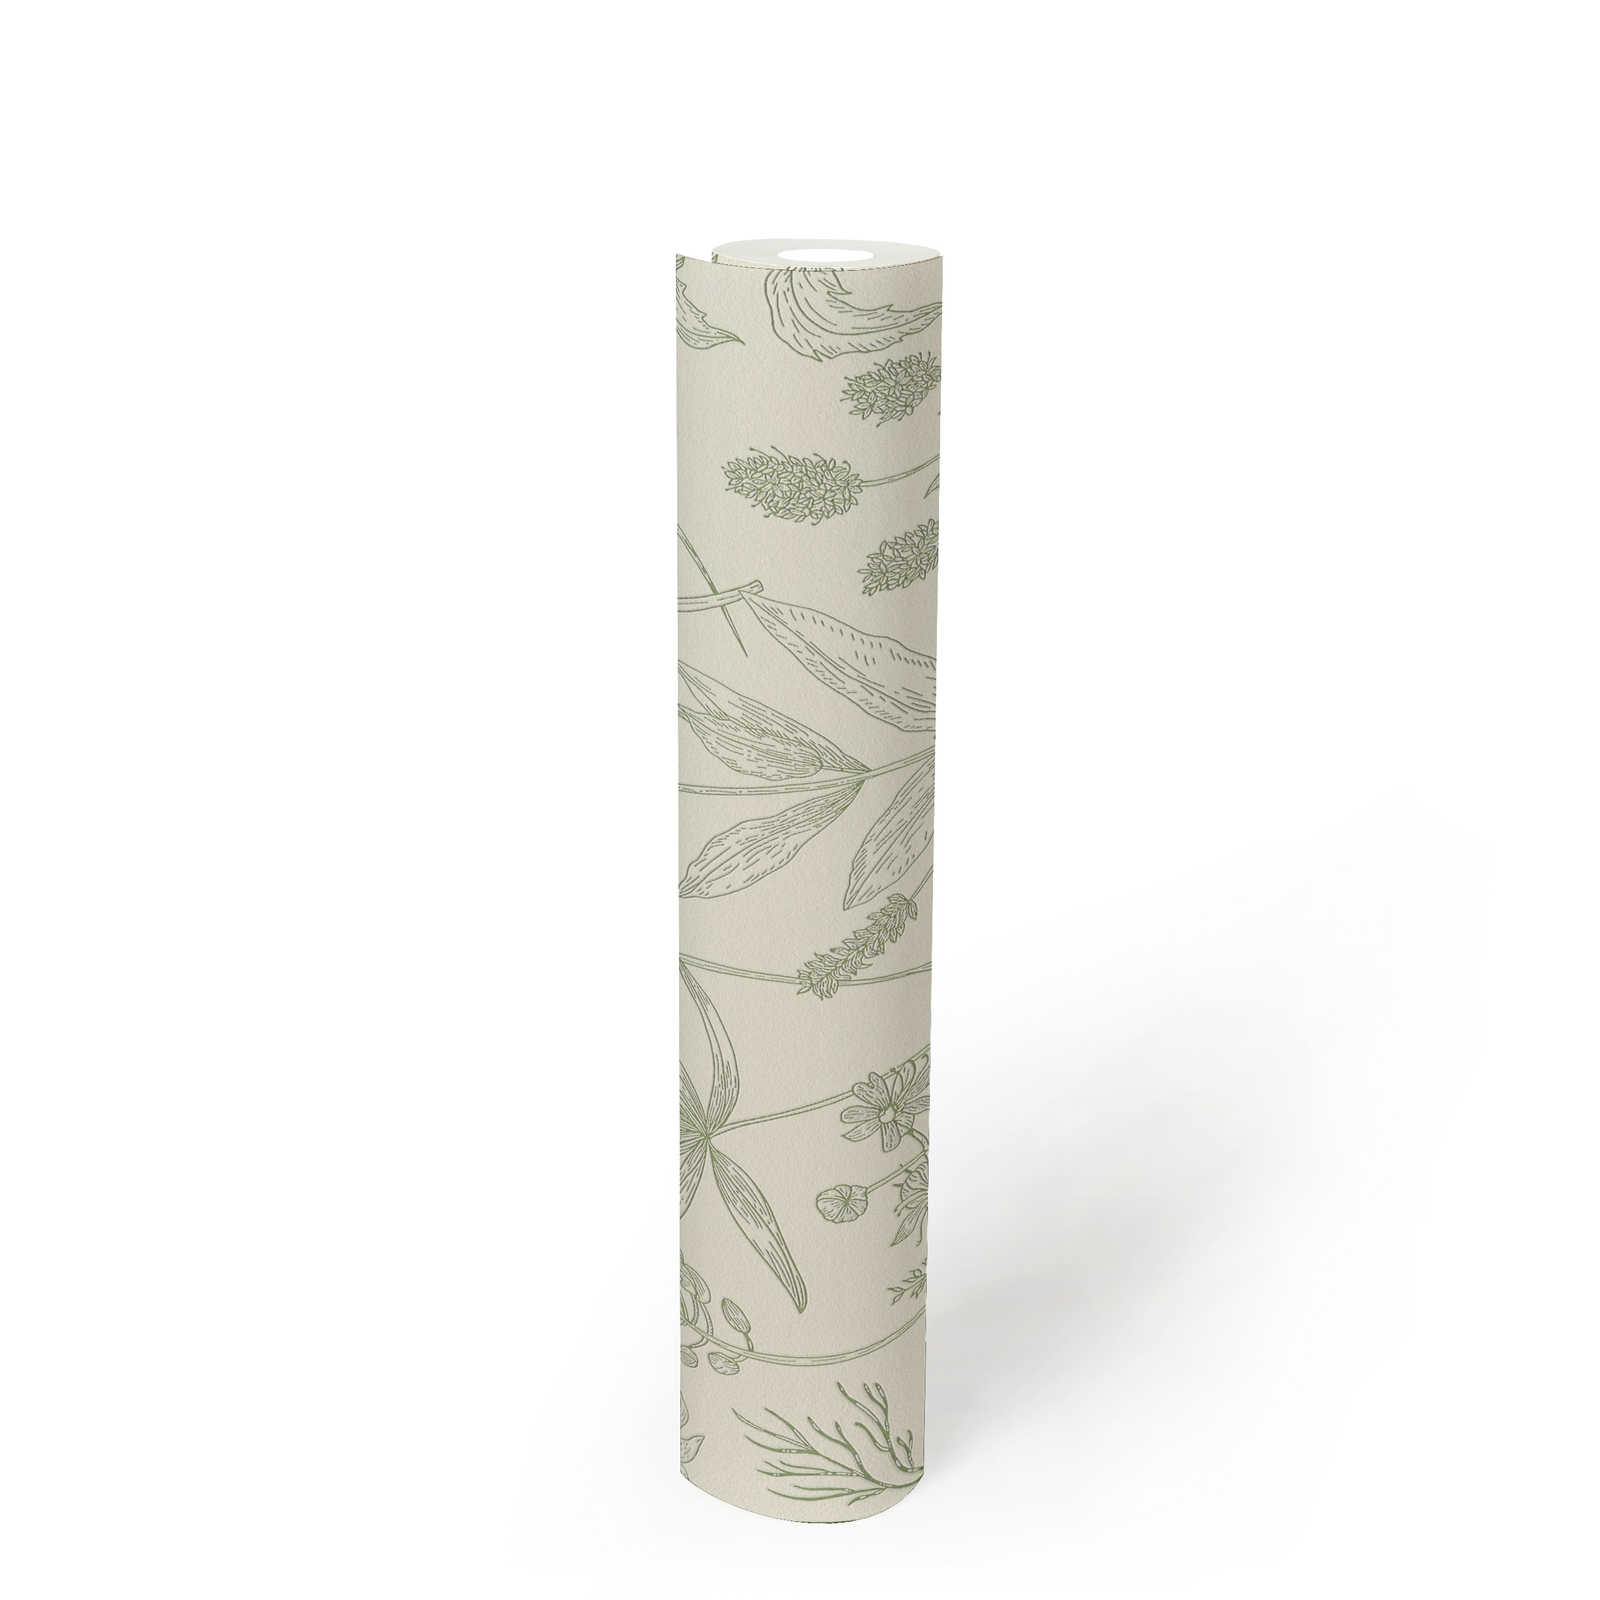             Papel pintado no tejido con motivos florales y acentos metálicos - verde, plata, blanco
        